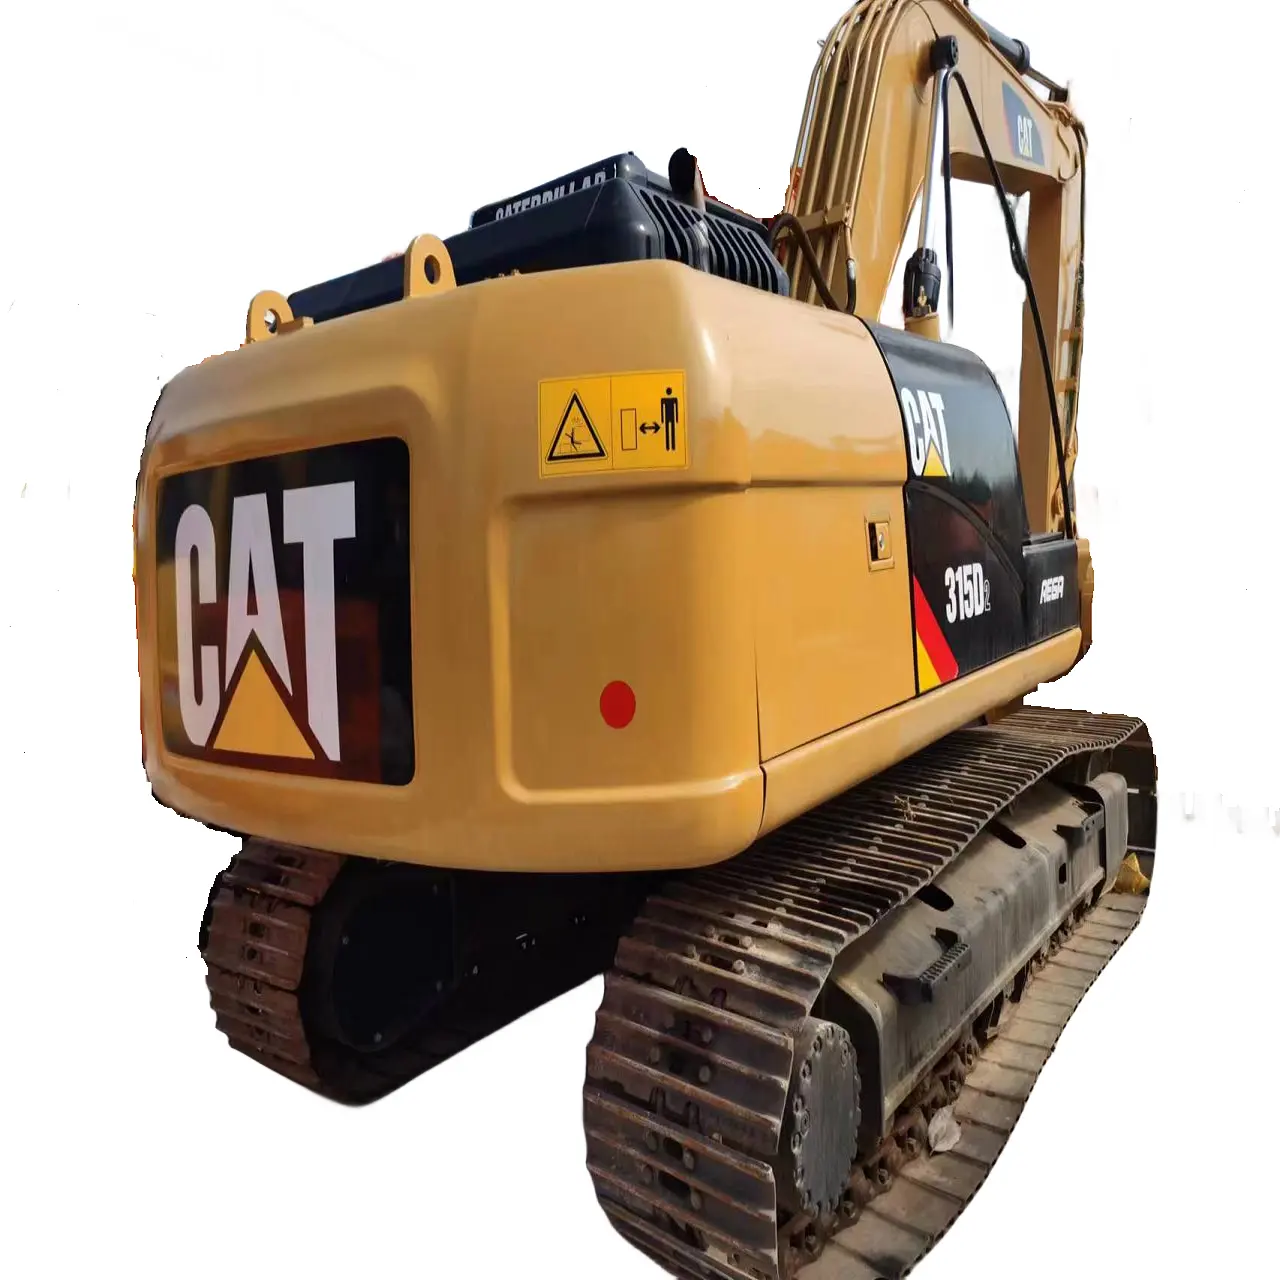 Buona qualità usato Cat 315 d2 escavatore idraulico cingolo 15Ton cingolo scavatore usato cat escavatori in buone condizioni per la vendita